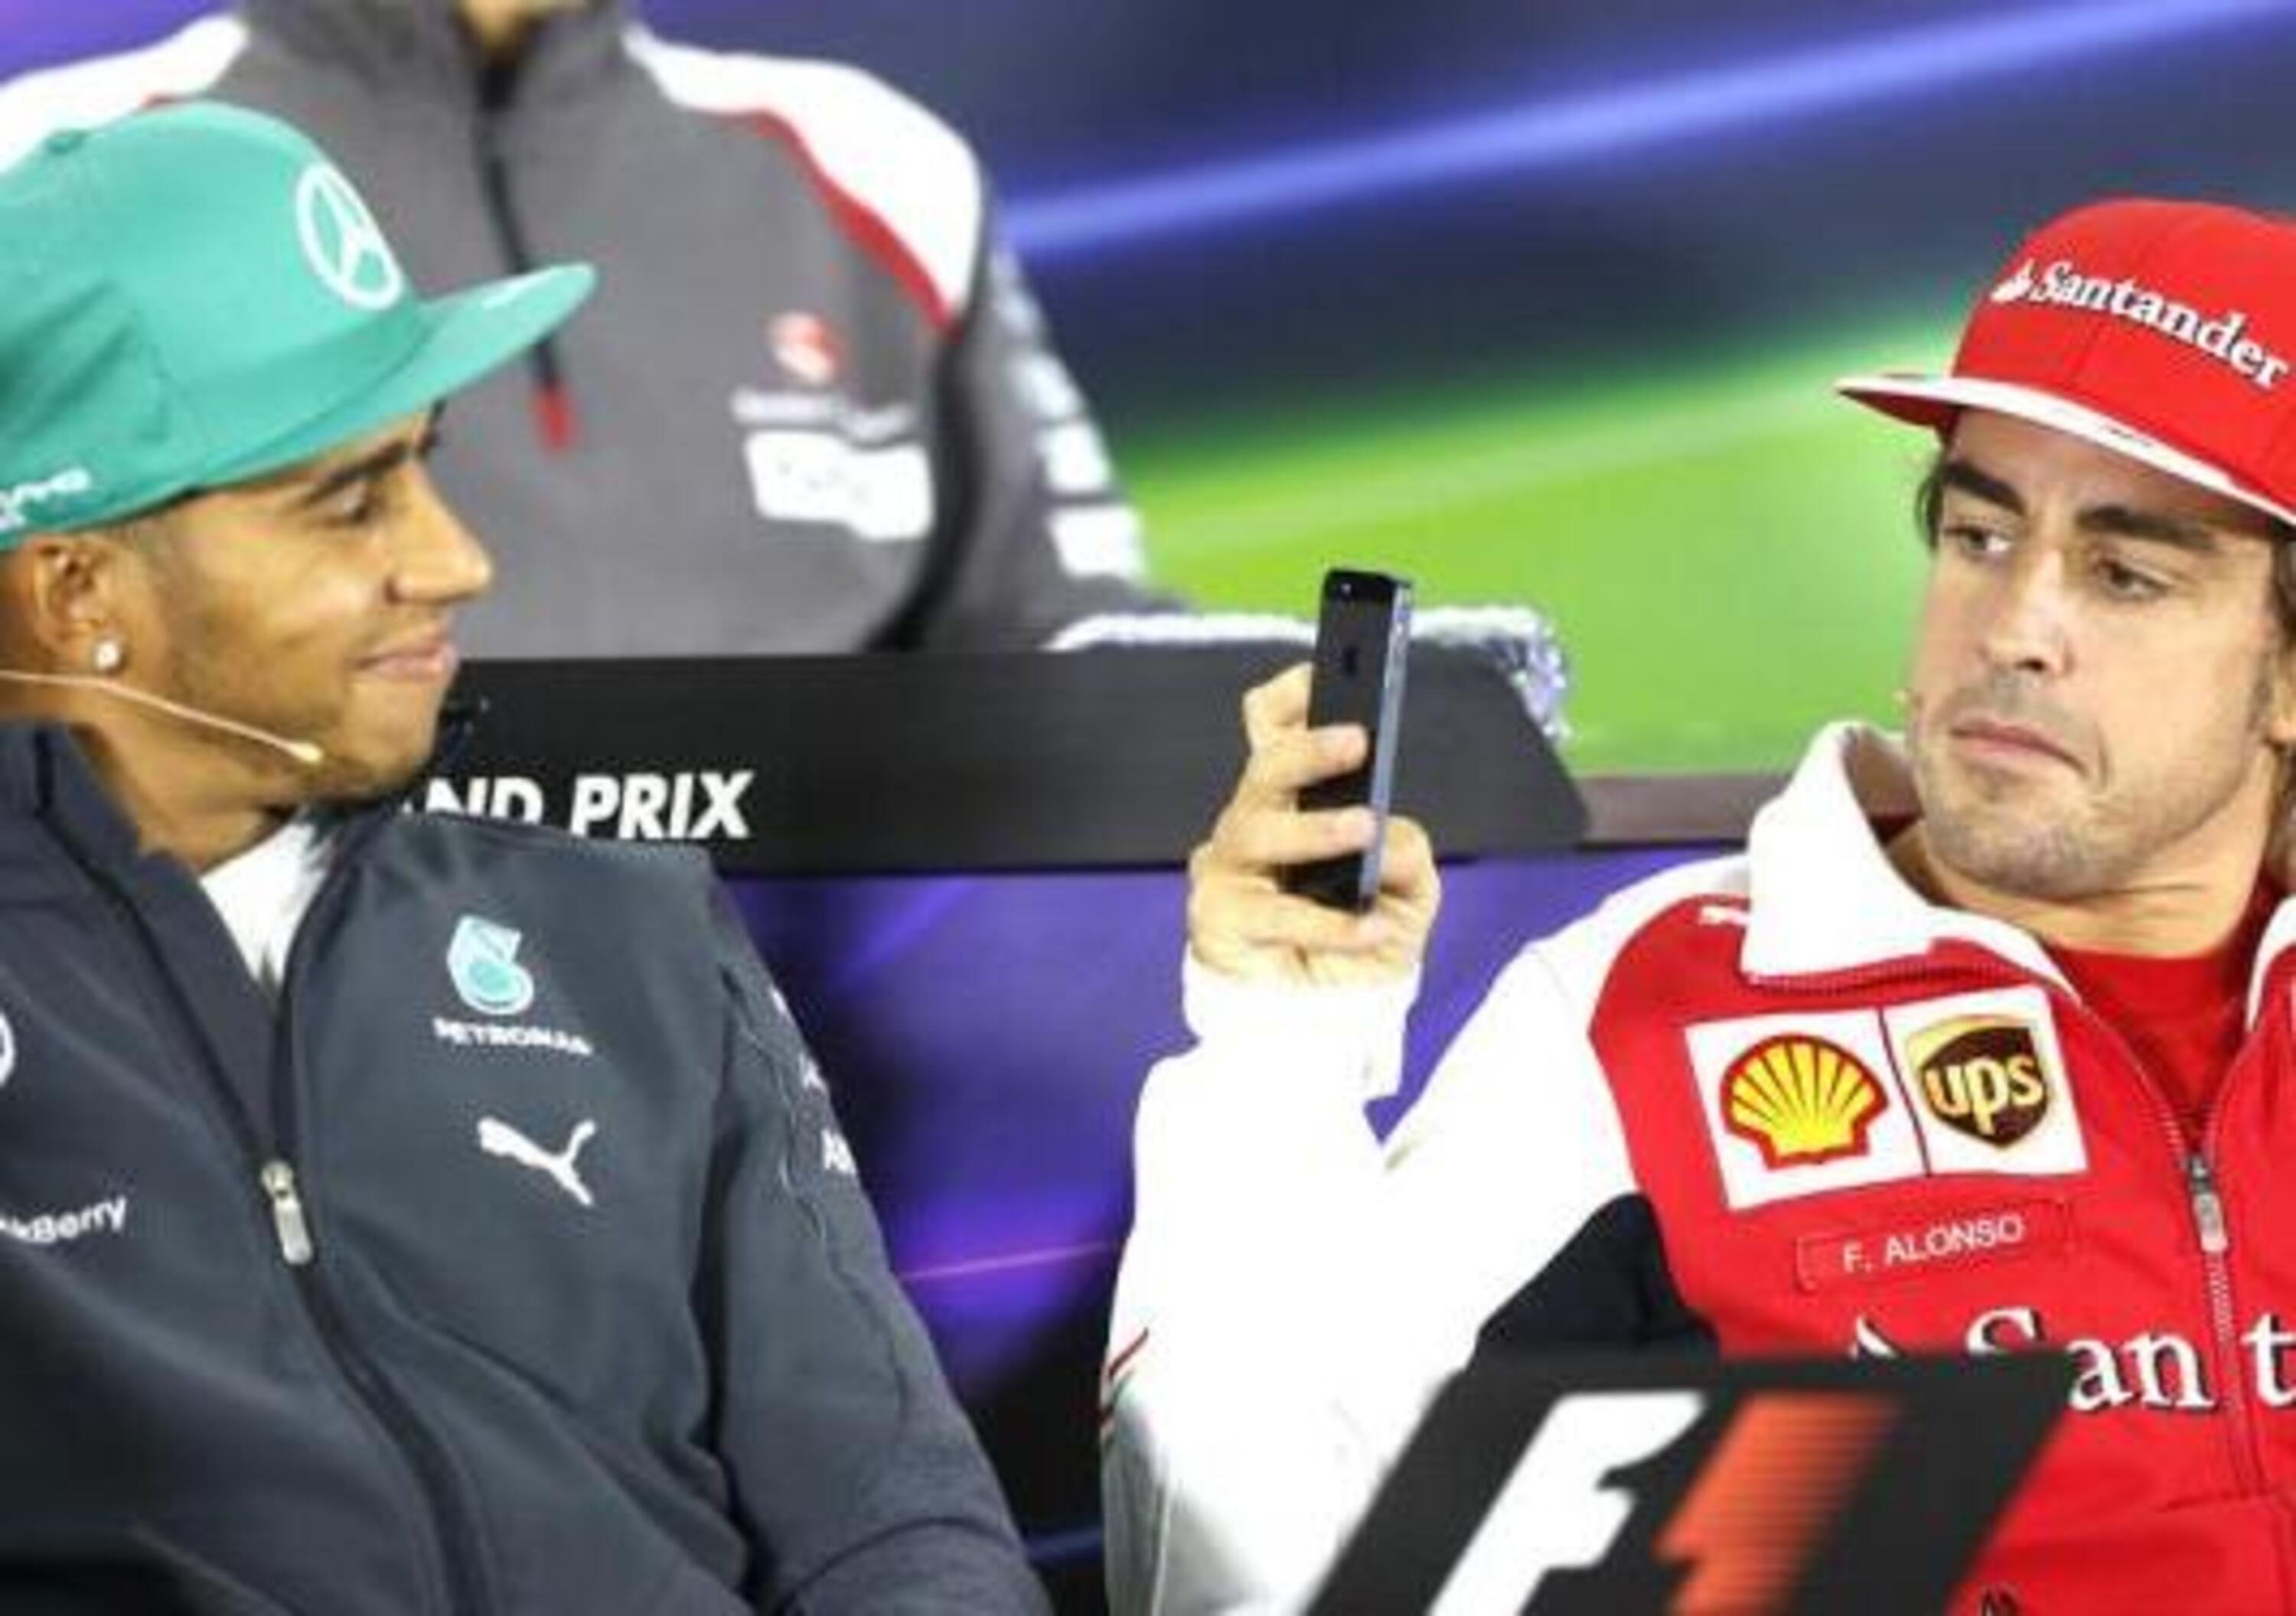 F1, Hamilton vs Alonso: le differenze in frenata